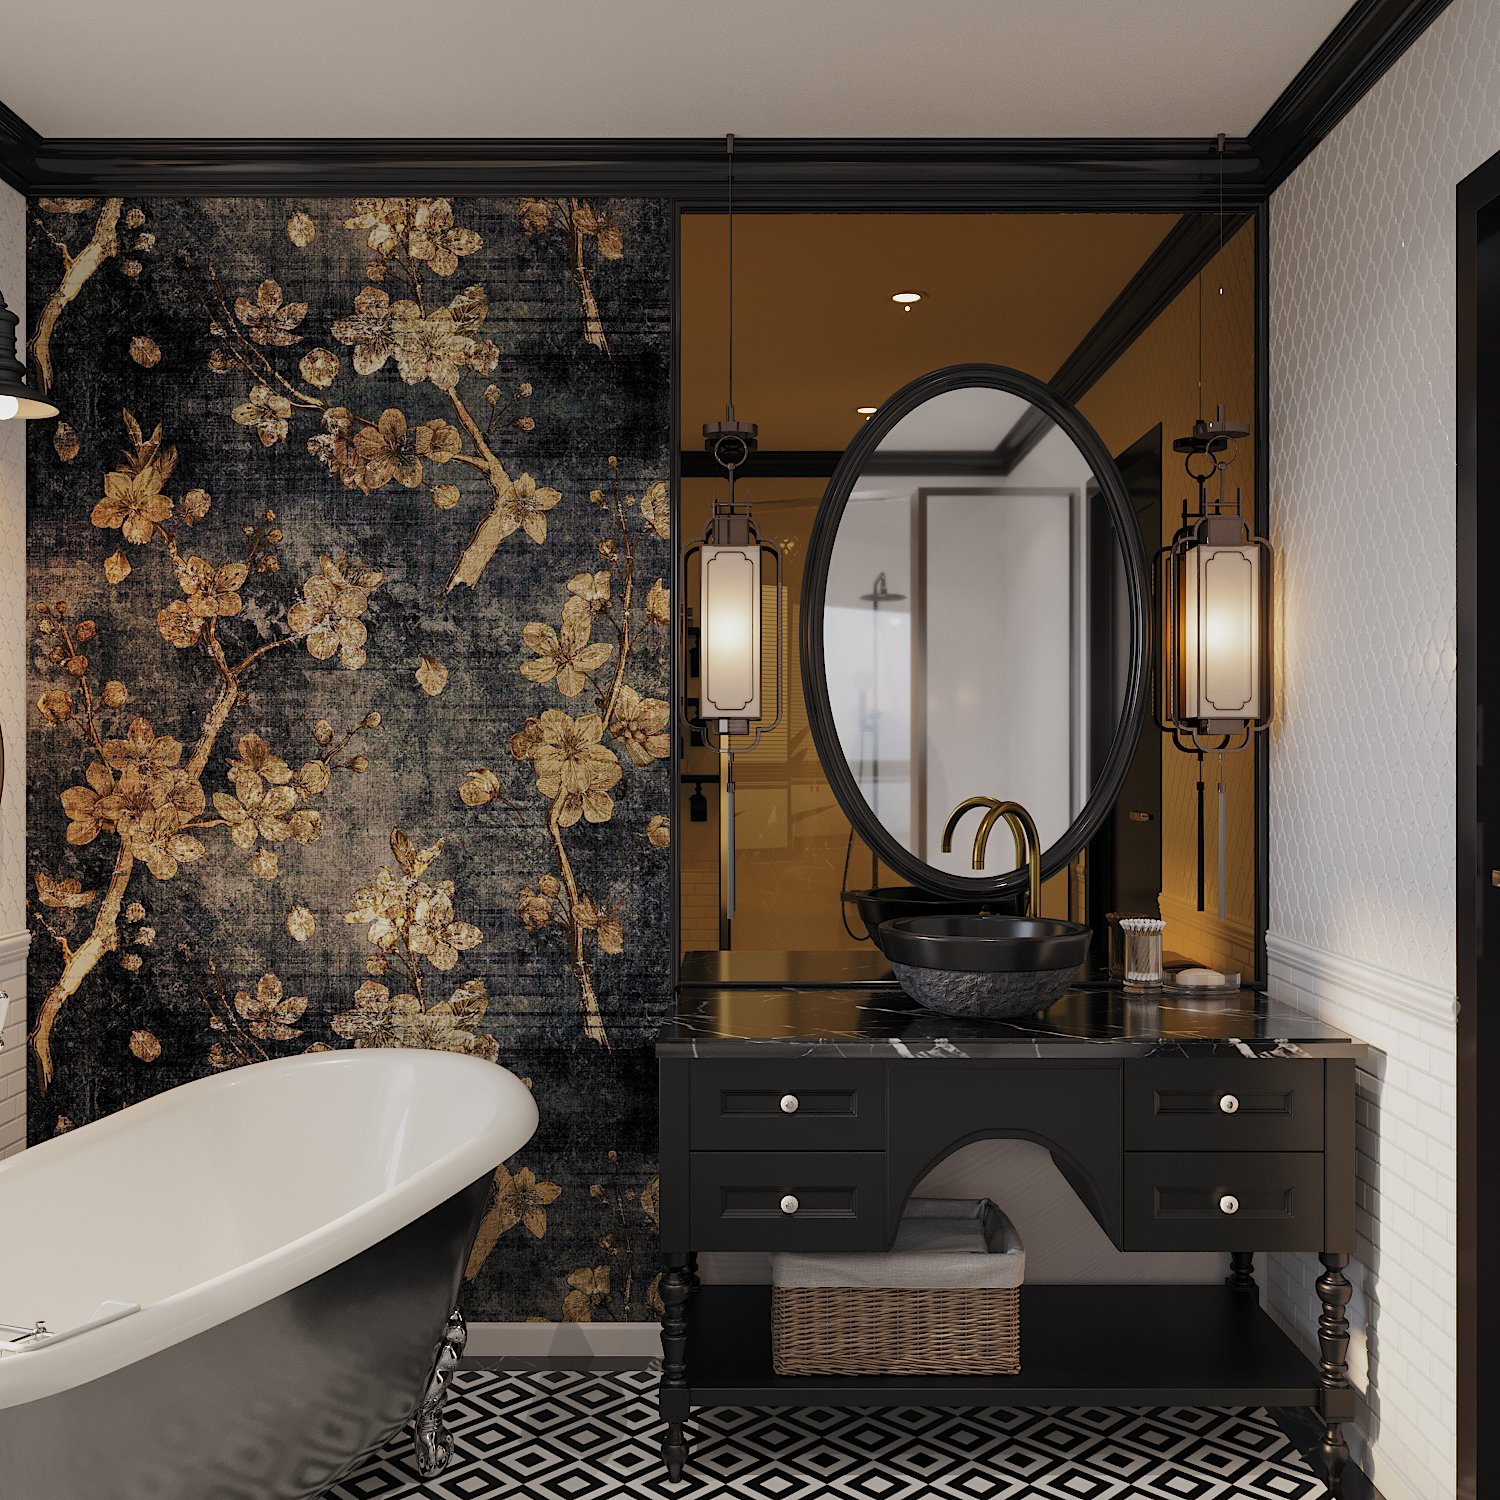 Tranh sơn màu tông màu đen - vàng đồng điểm tô không gian phòng tắm.